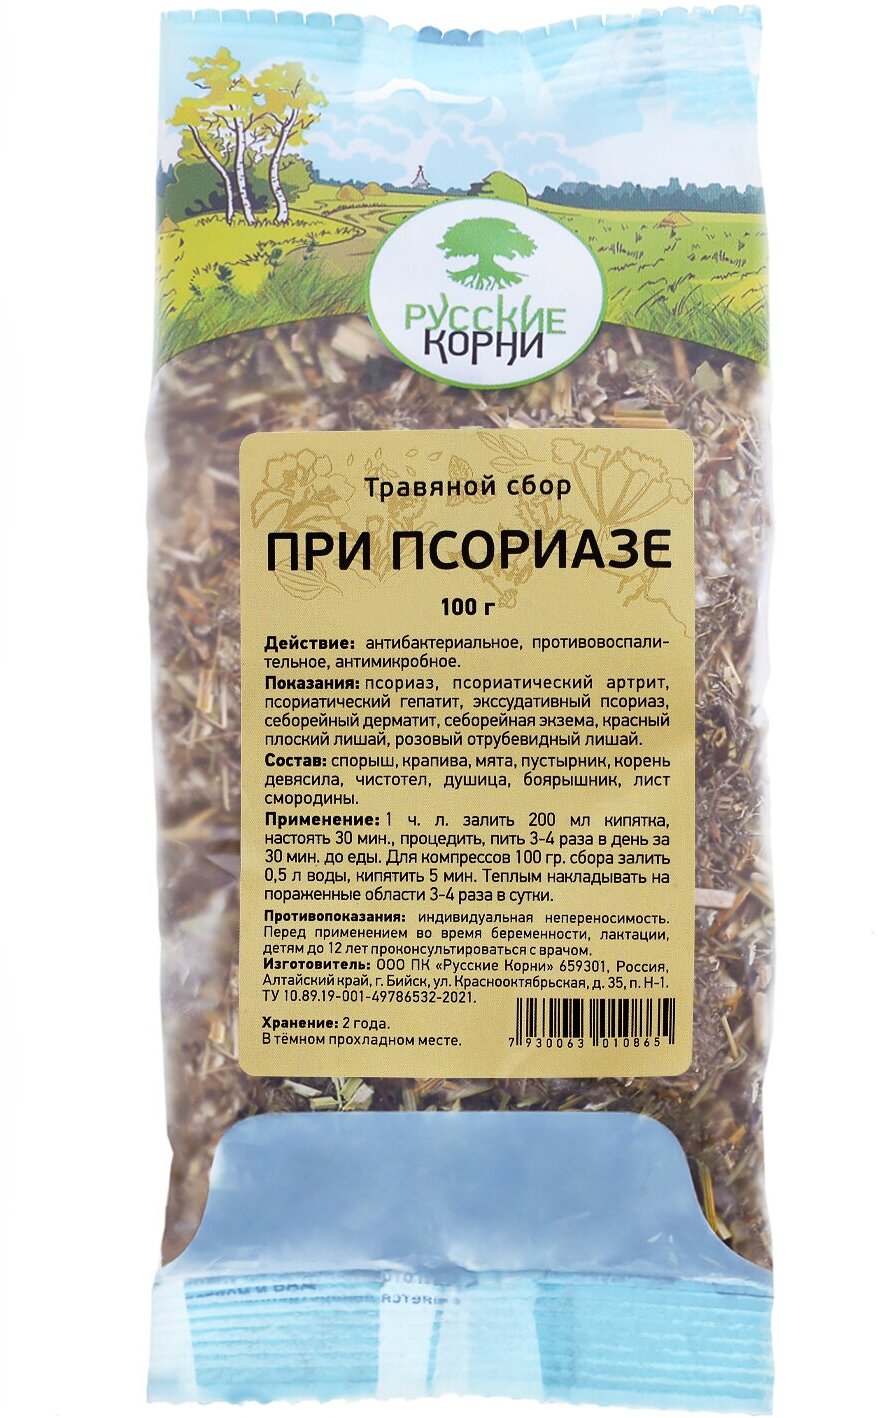 Русские корни сбор при псориазе, 100 г, травяной